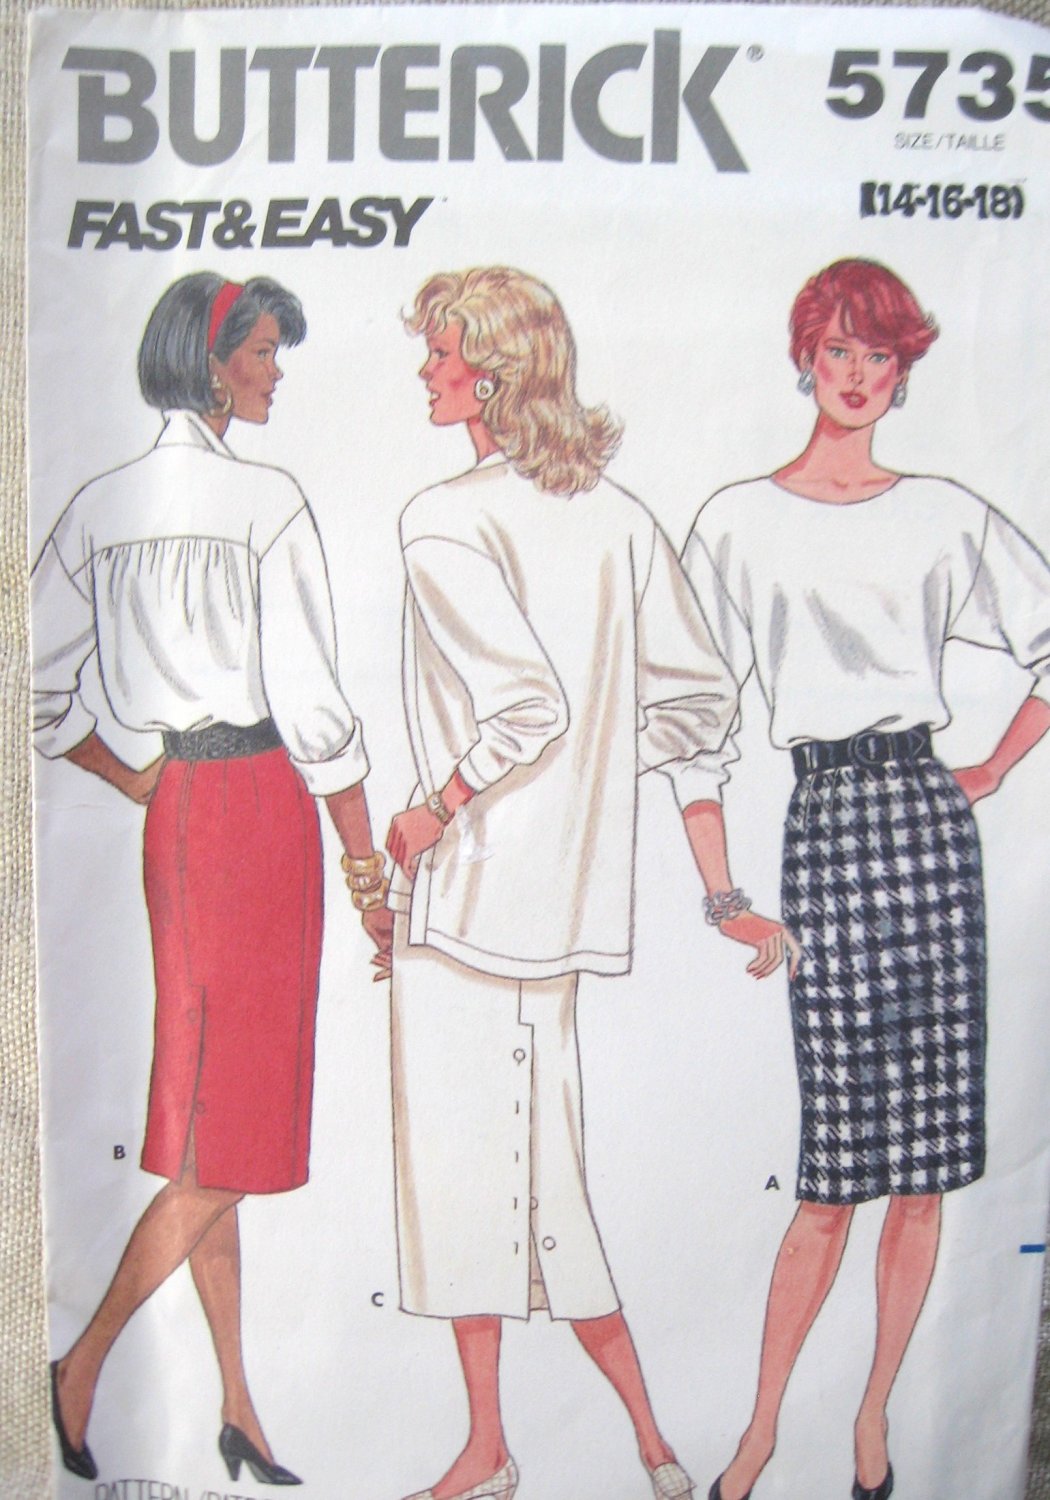 Butterick 5735 Skirt Sewing Pattern, Sizes 14, 16, 18 uncut